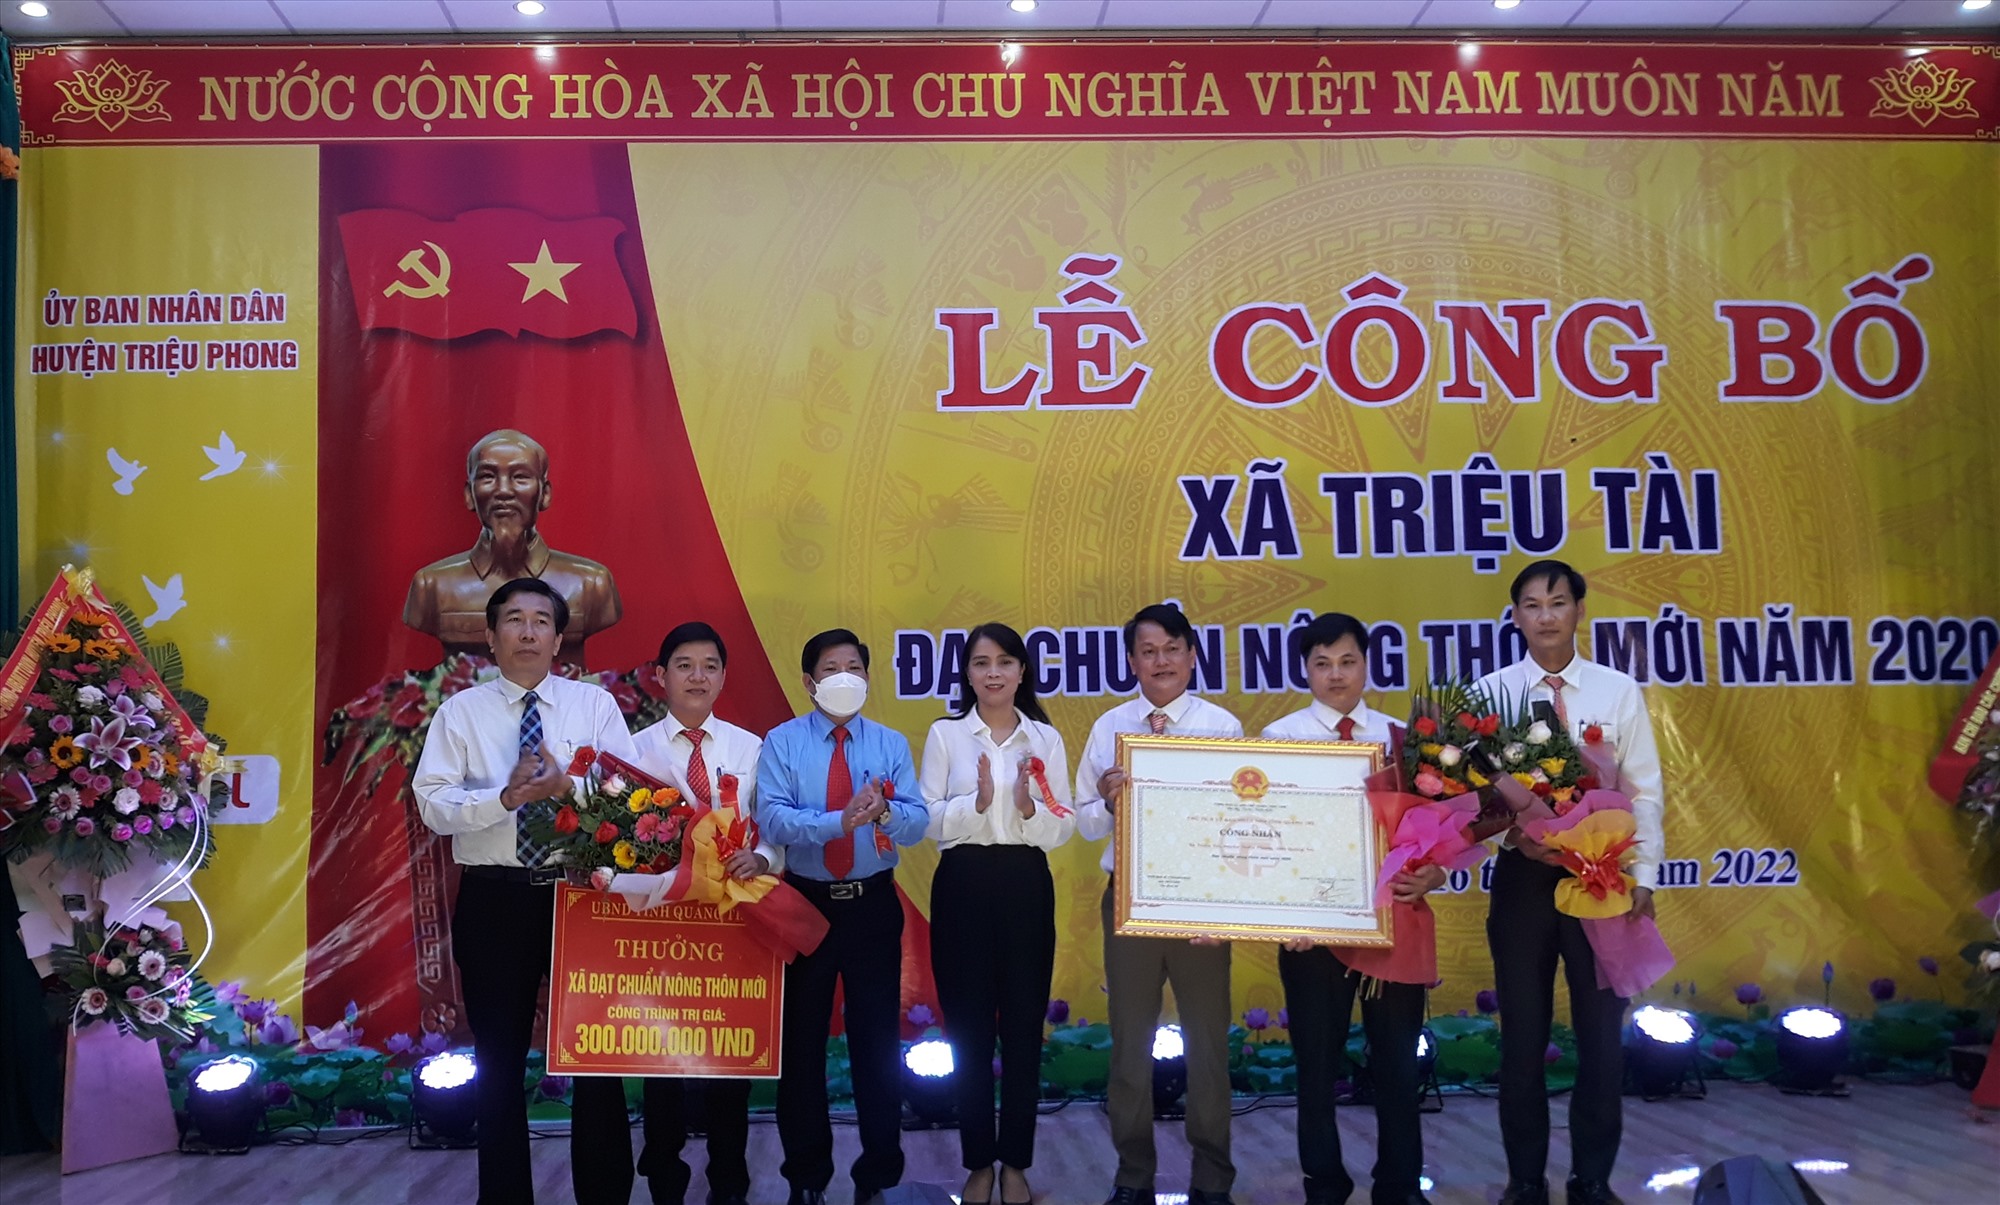 Lãnh đạo xã Triệu Tài đón nhận Bằng công nhận xã đạt chuẩn nông thôn mới và phần thưởng 300 triệu đồng của UBND tỉnh- Ảnh: NV